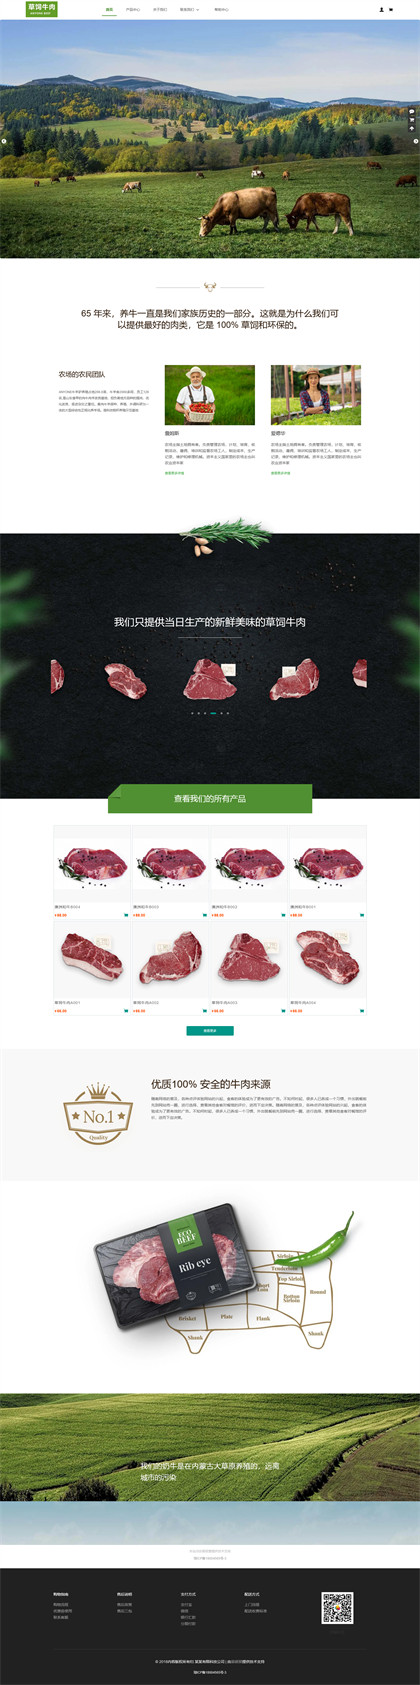 畜牧业-养殖业-家禽养殖-养殖场商城网站模板网站模板图片